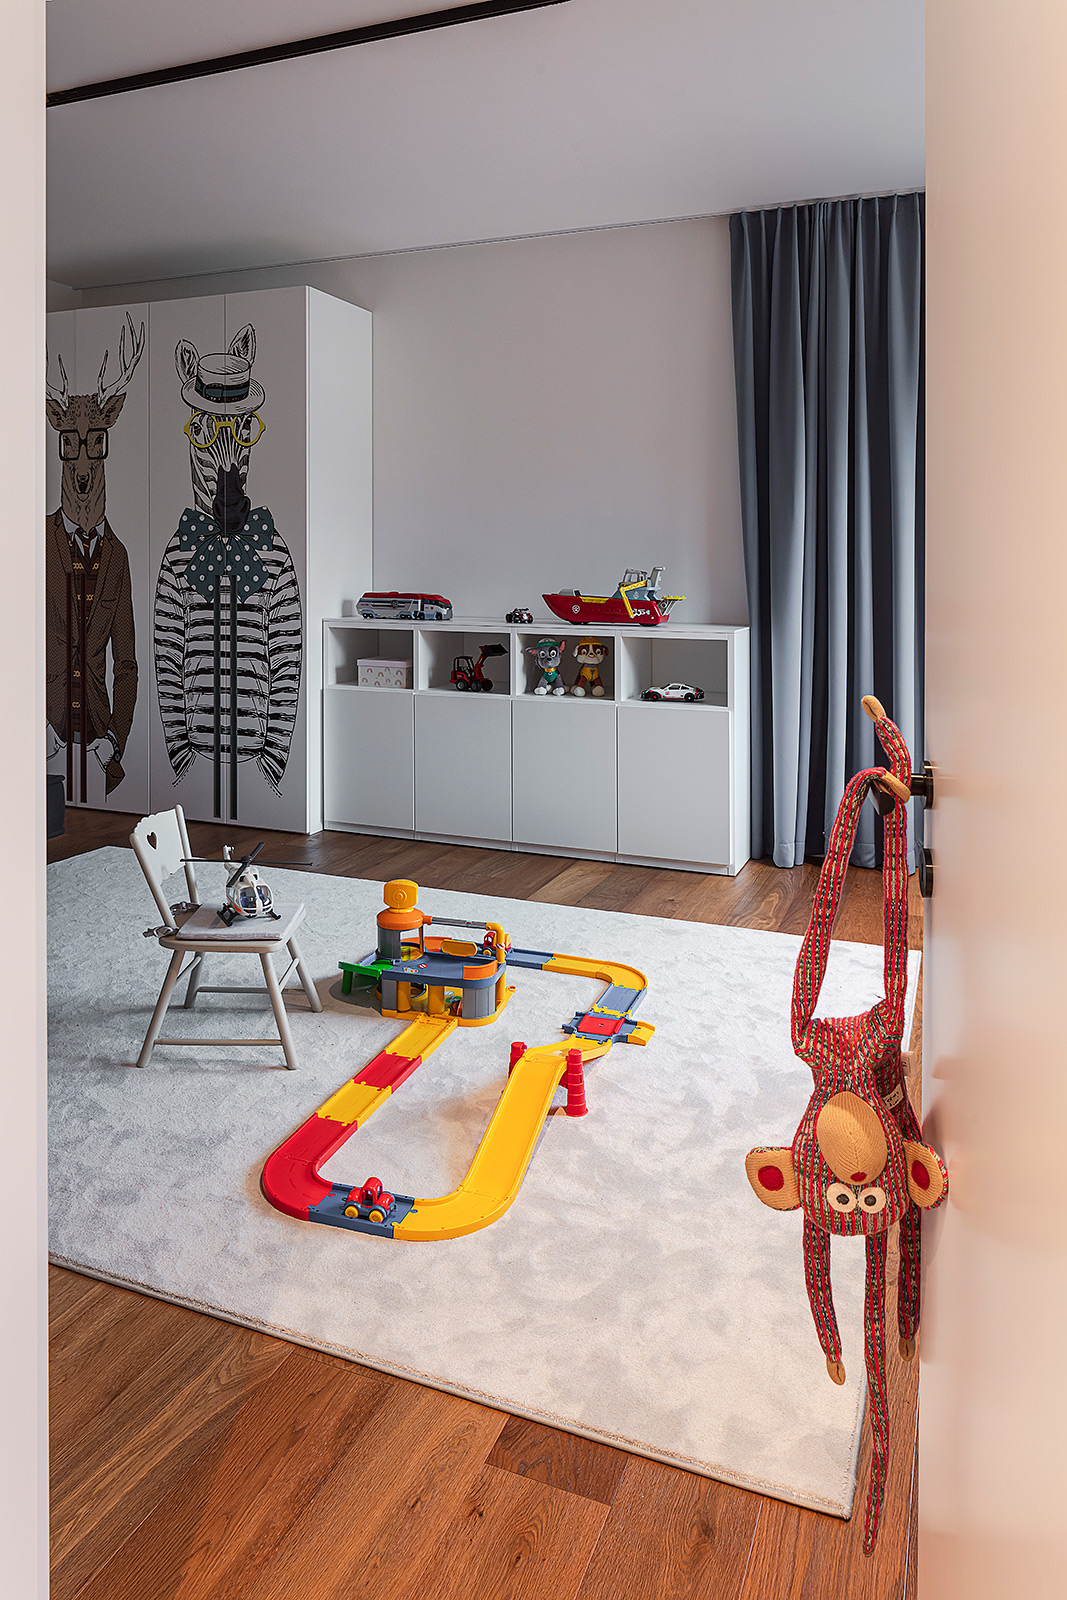 Fotograf für Interior und Design,
Kinderzimmer